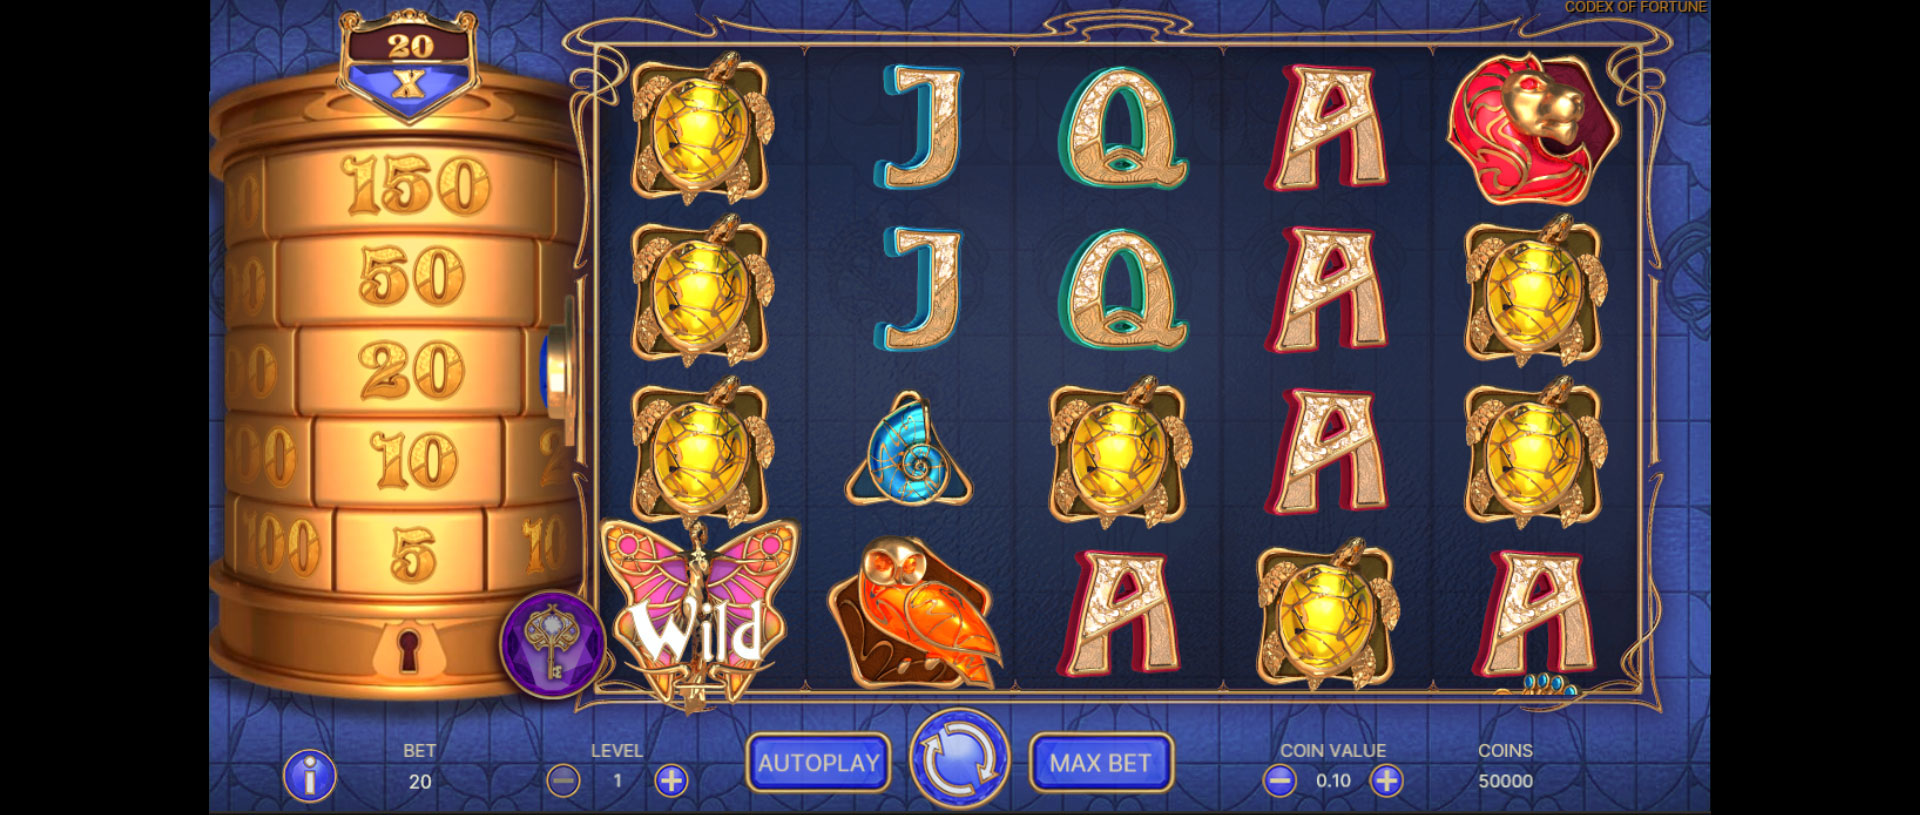 schermata del gioco slot machine codex of fortune